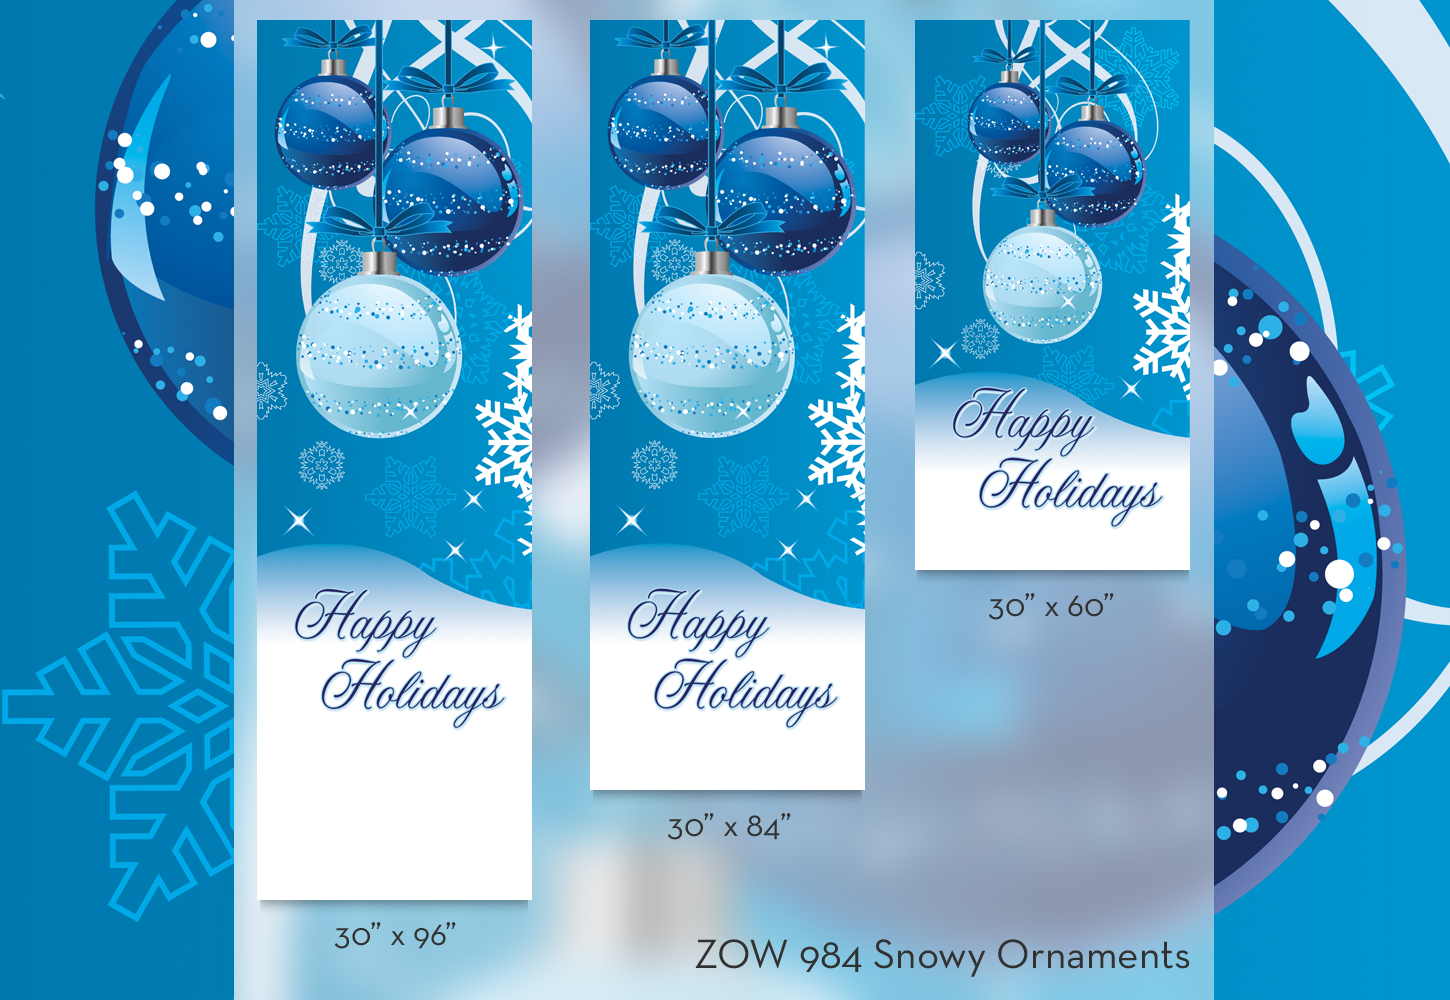 ZOW 984 Snowy Ornaments